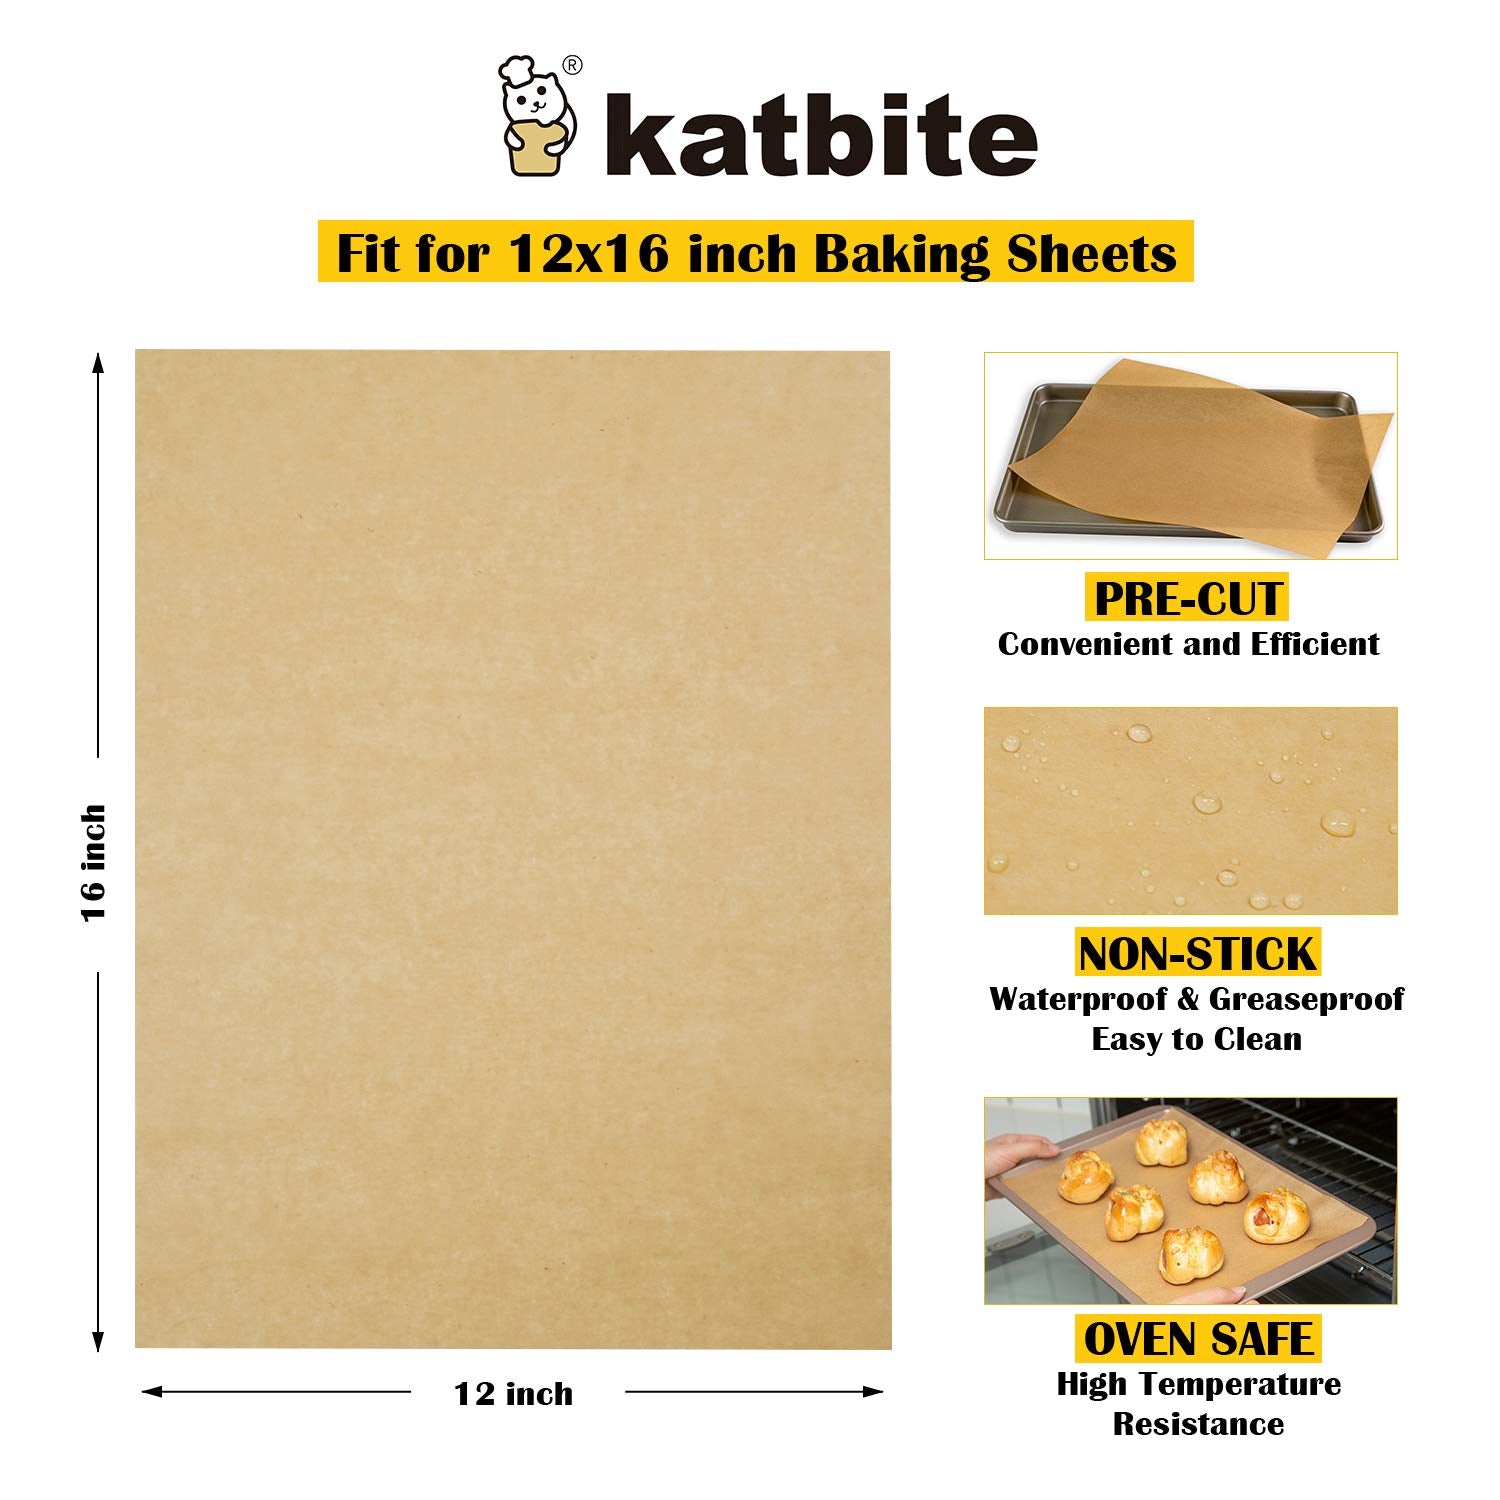  DISSKNIC 200PCS Unbleached Parchment Paper sheets 12 x 16,  Precut Parchment Paper for Baking, Half Sheet Parchment Paper for Cookie  Baking Sheets,Kitchen Gadgets Baking Supplies Baking Paper for Oven: Home 